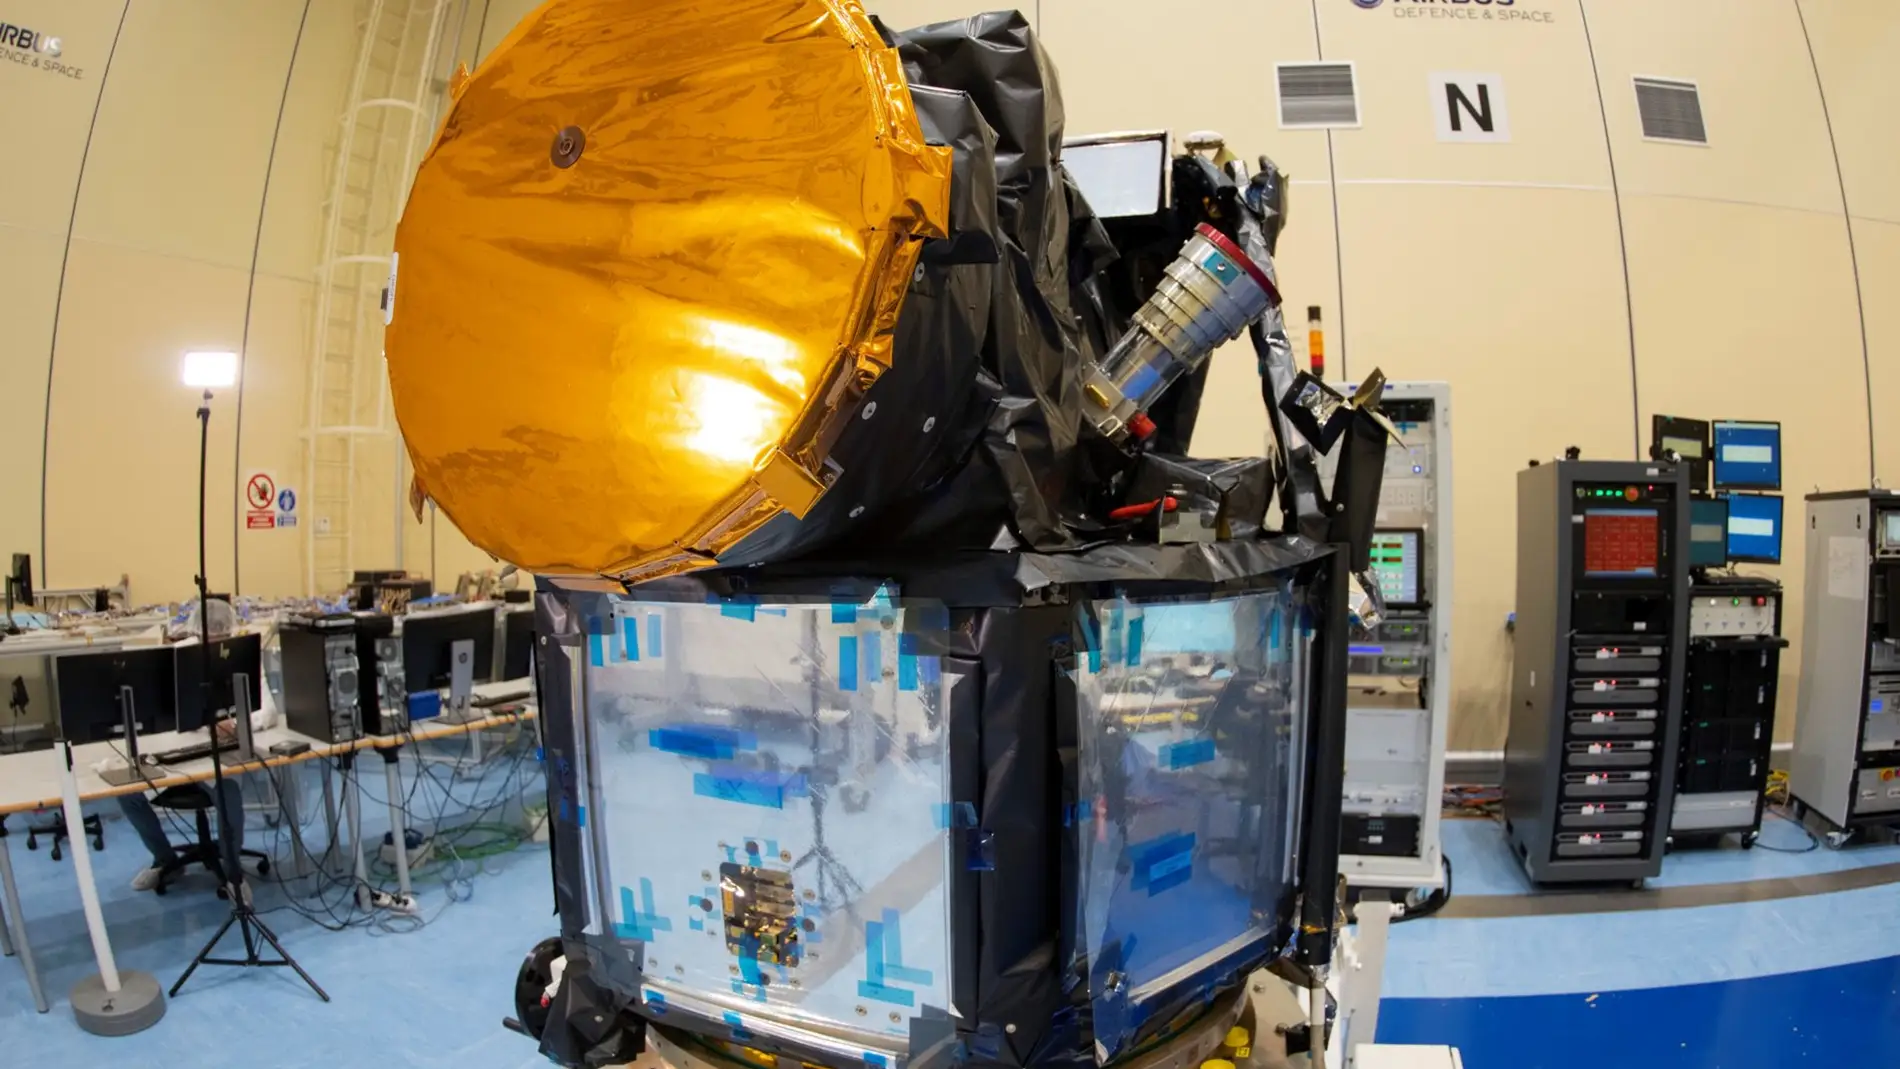 Completado el satelite Cheops tecnologia espanola para analizar exoplanetas